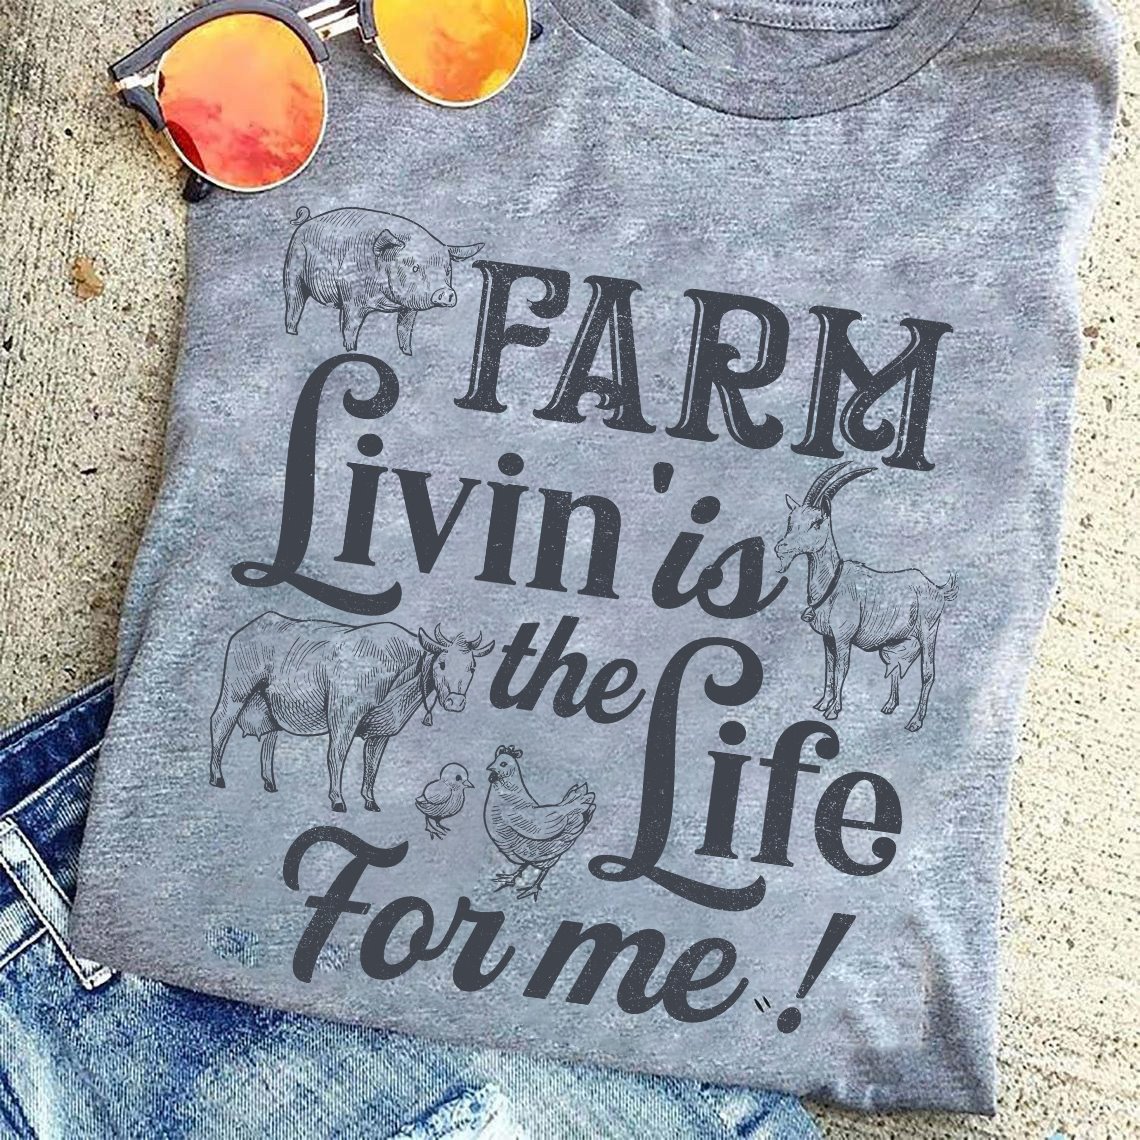 Farm livin is the life for me - Farmer the job, animal lover